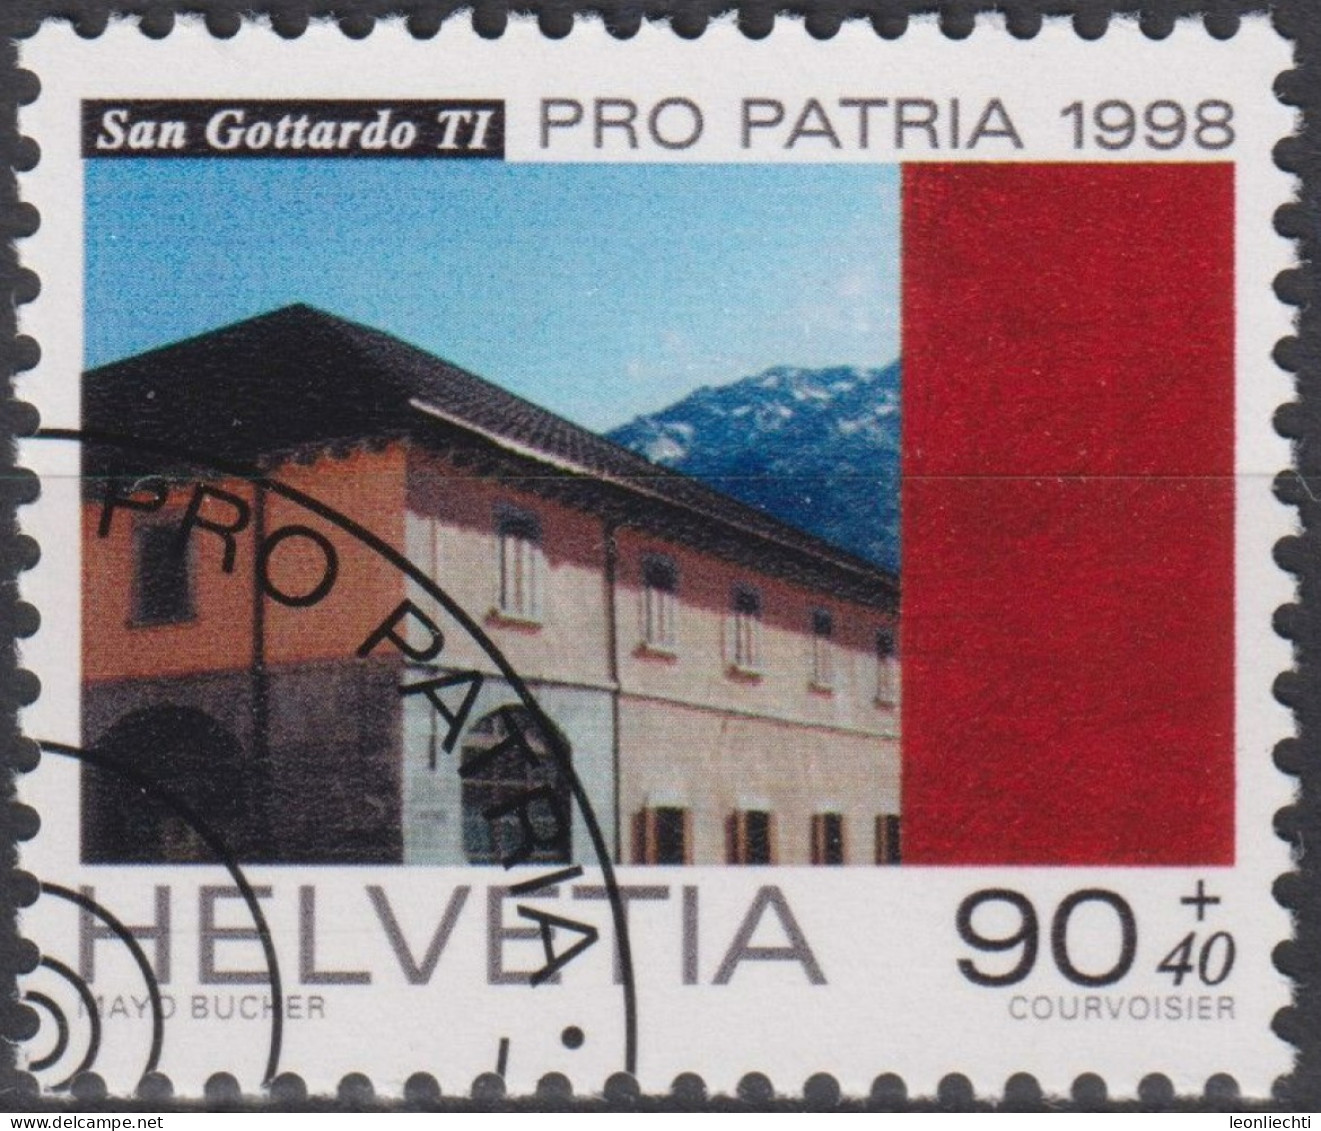 1998 Schweiz Pro Patria, San Gottardo TI, ⵙ Zum:CH B262, Mi:CH 1652, Yt:CH 1580, - Usati